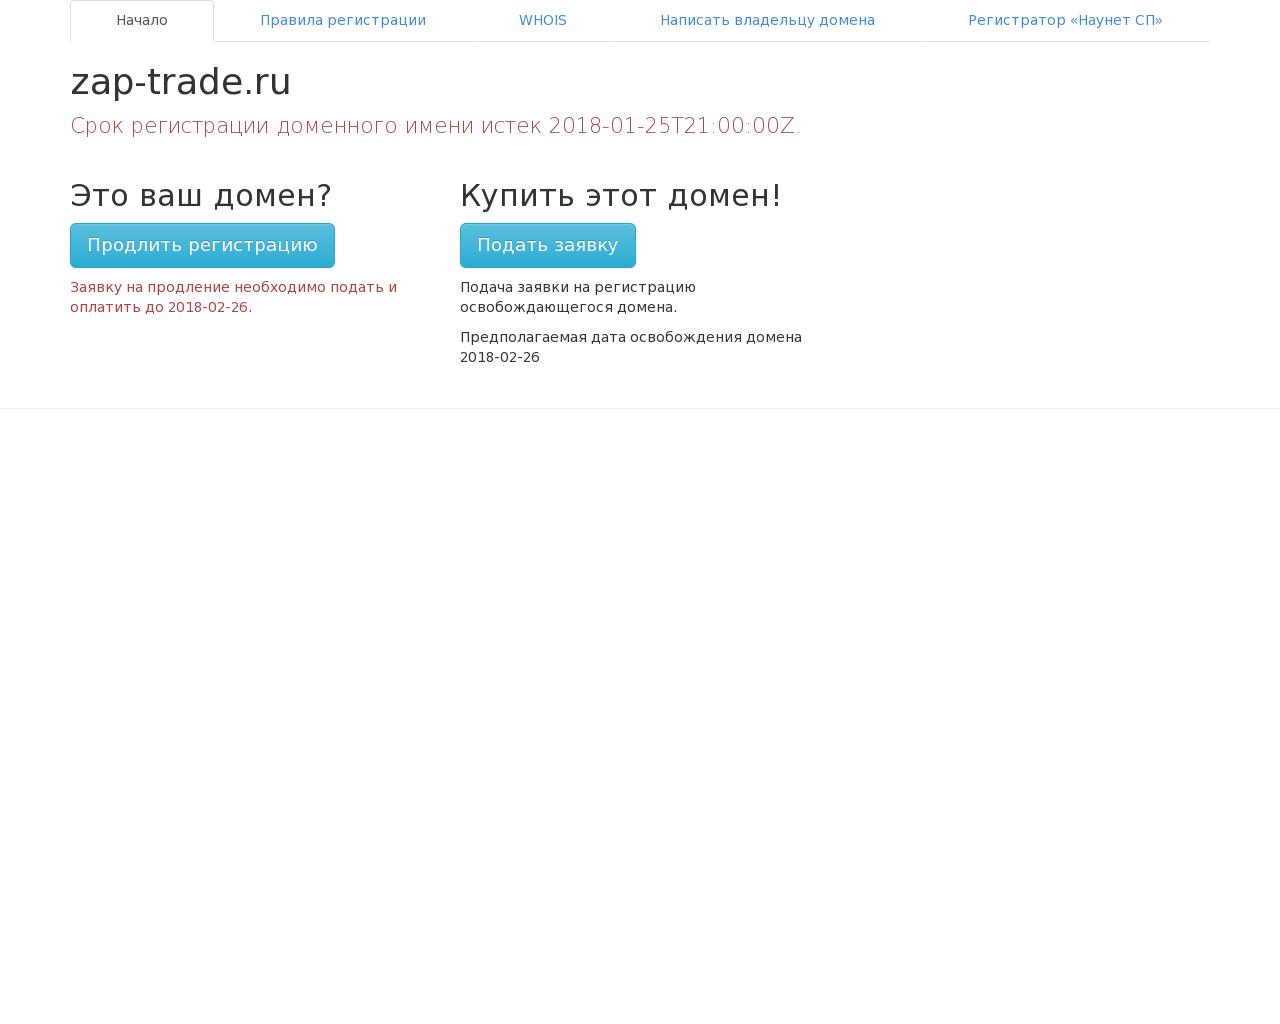 Изображение сайта zap-trade.ru в разрешении 1280x1024